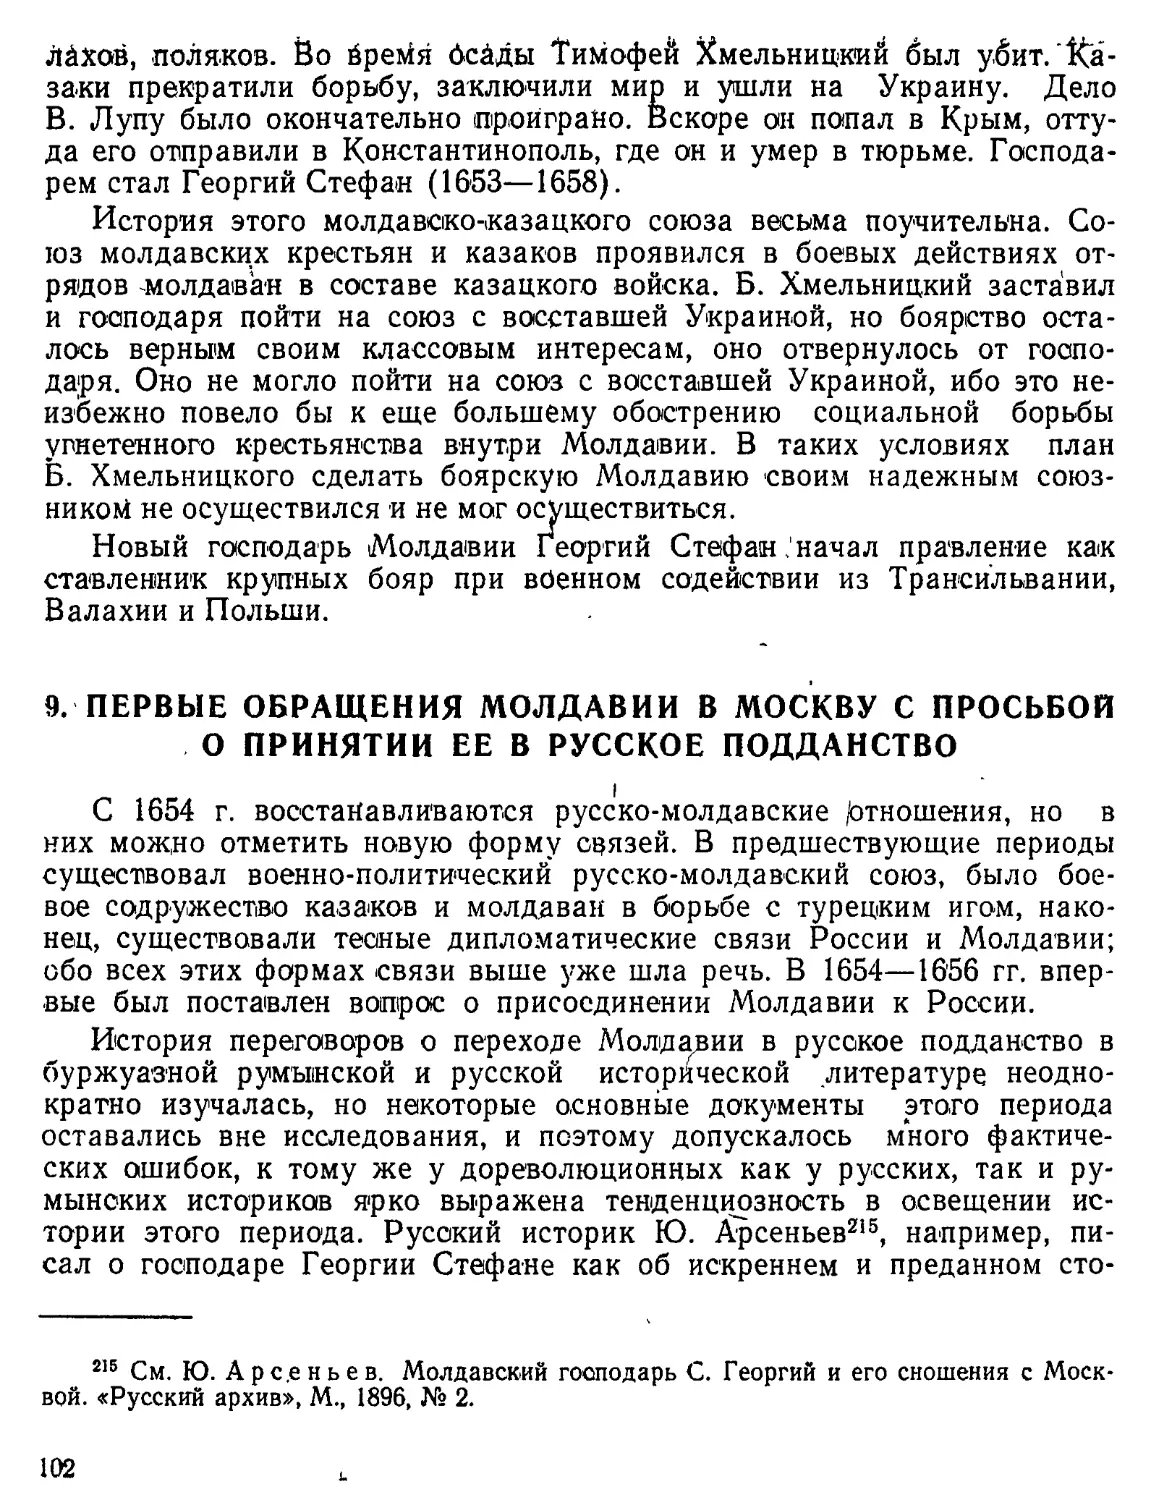 Первые обращения Молдавии в Москву с просьбой о принятии ее в русское подданство